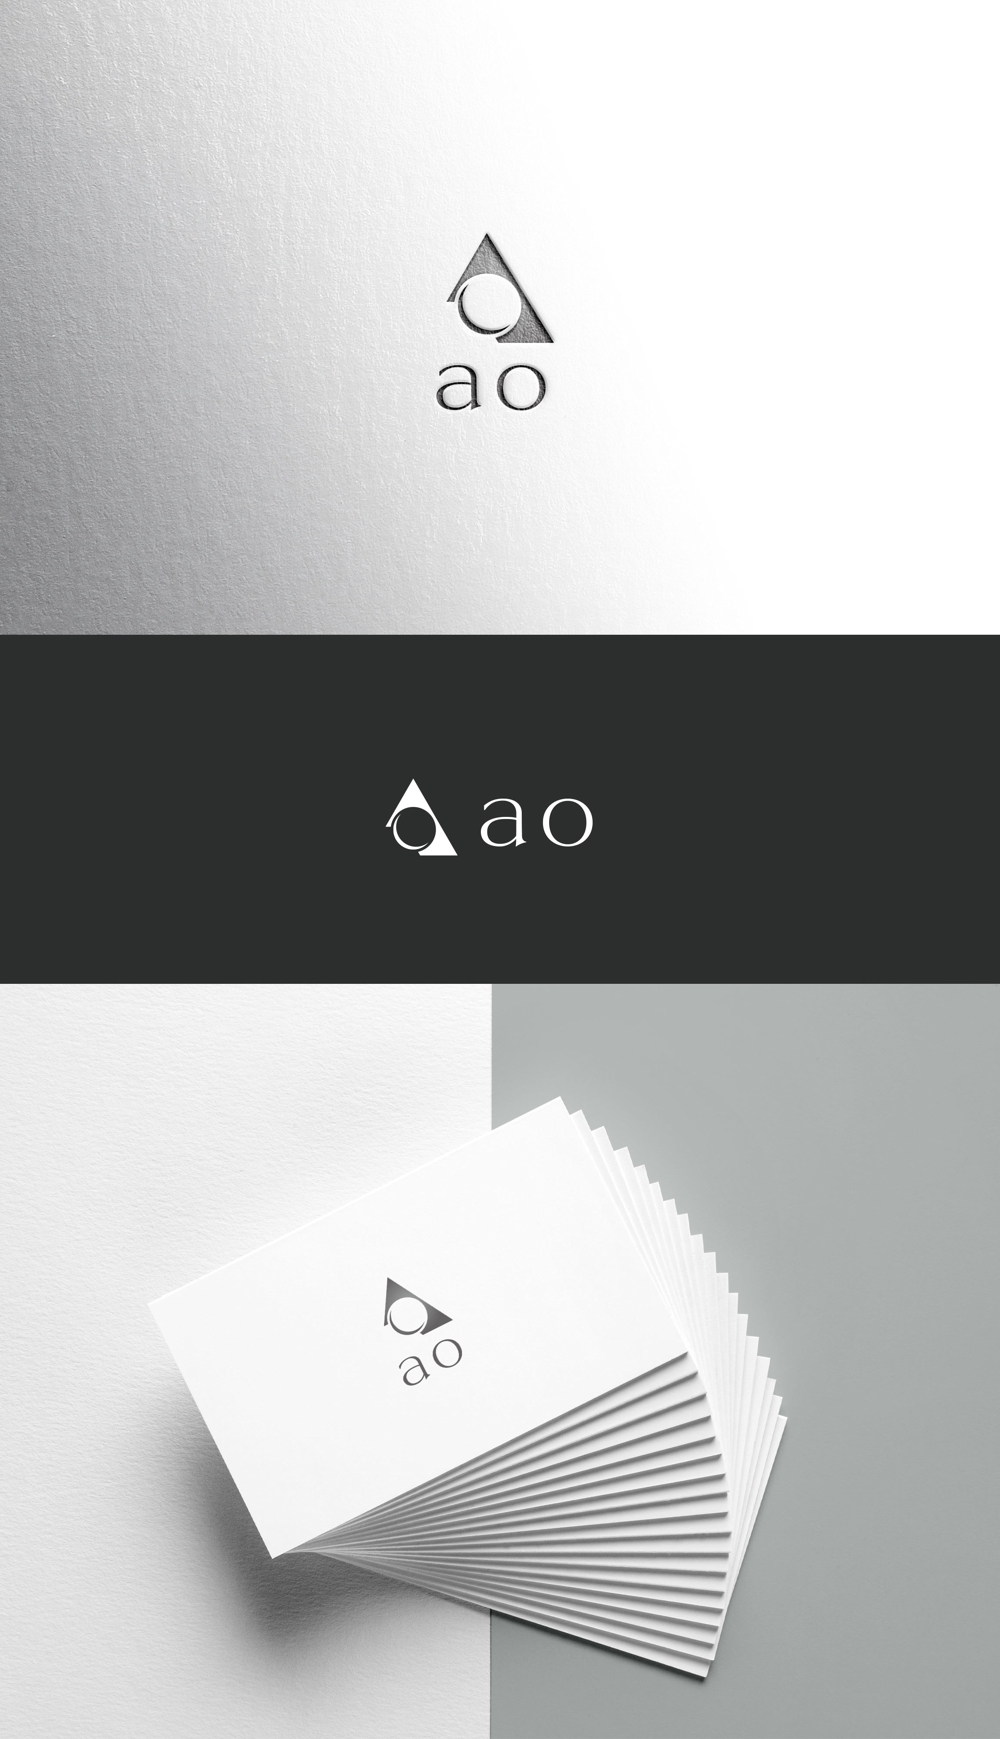 ヘアオイル化粧品「ao」の容器ロゴ作成